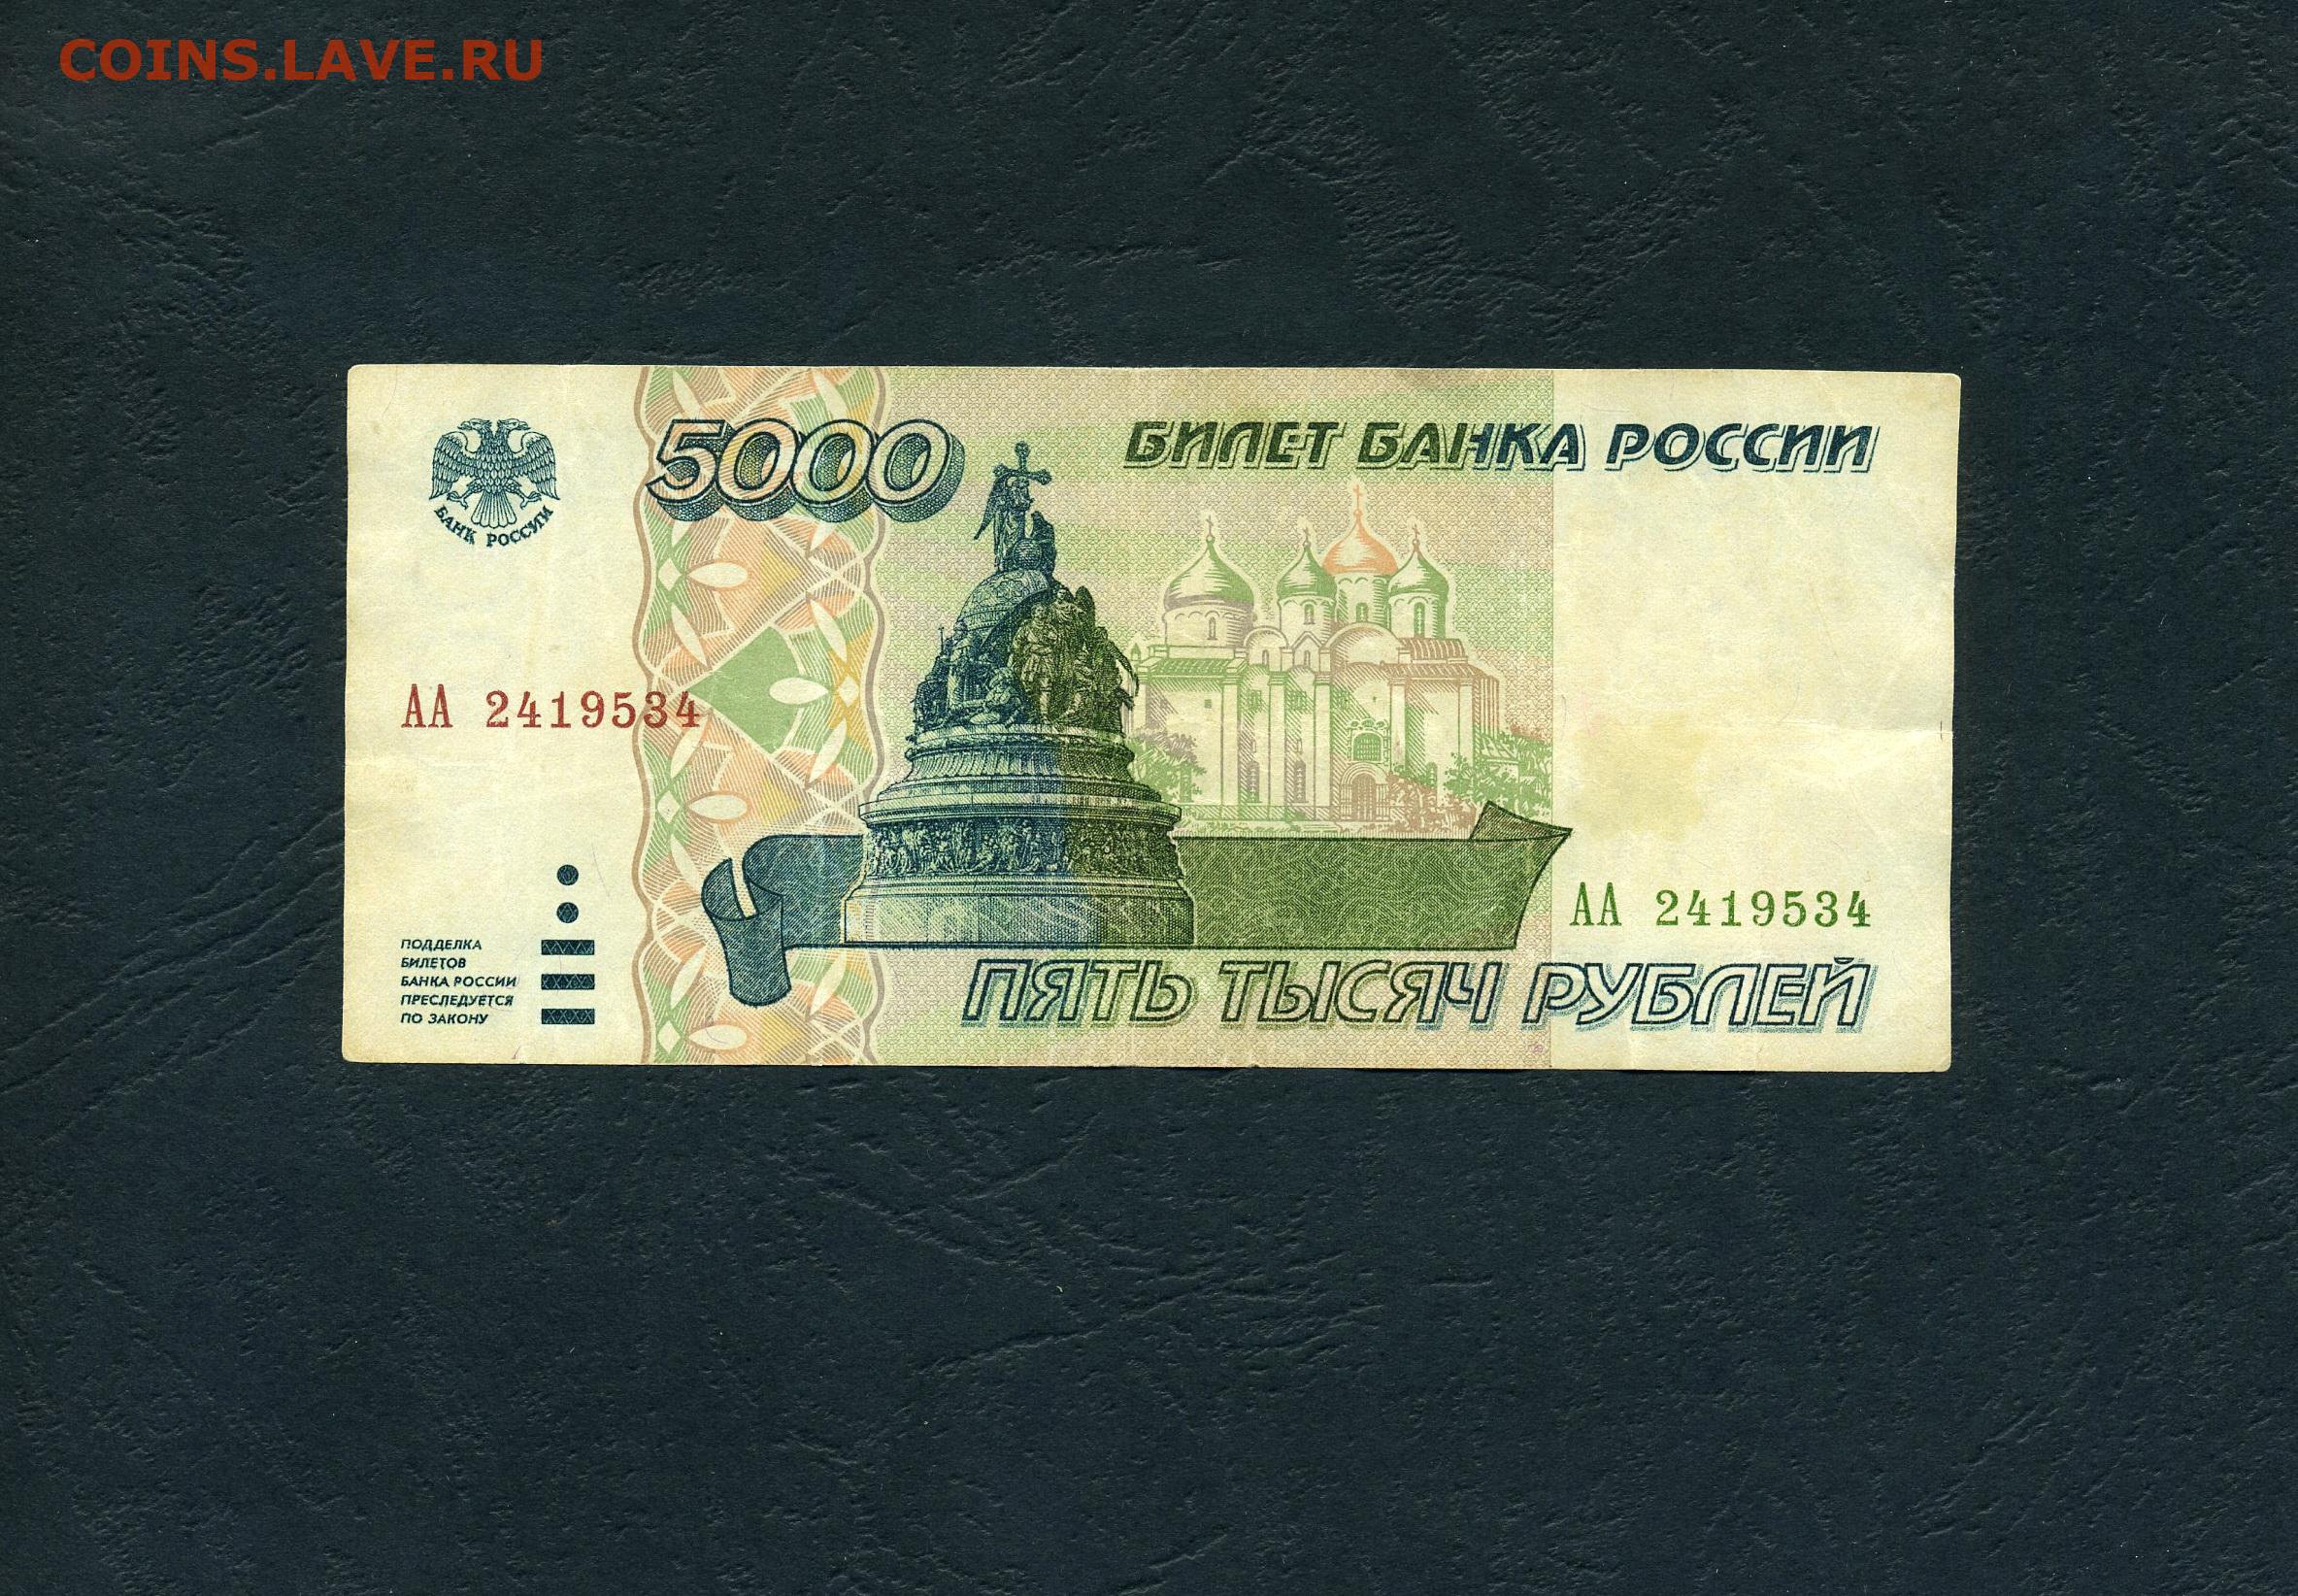 5000 рублей 1995. Купюра с Барнаулом.